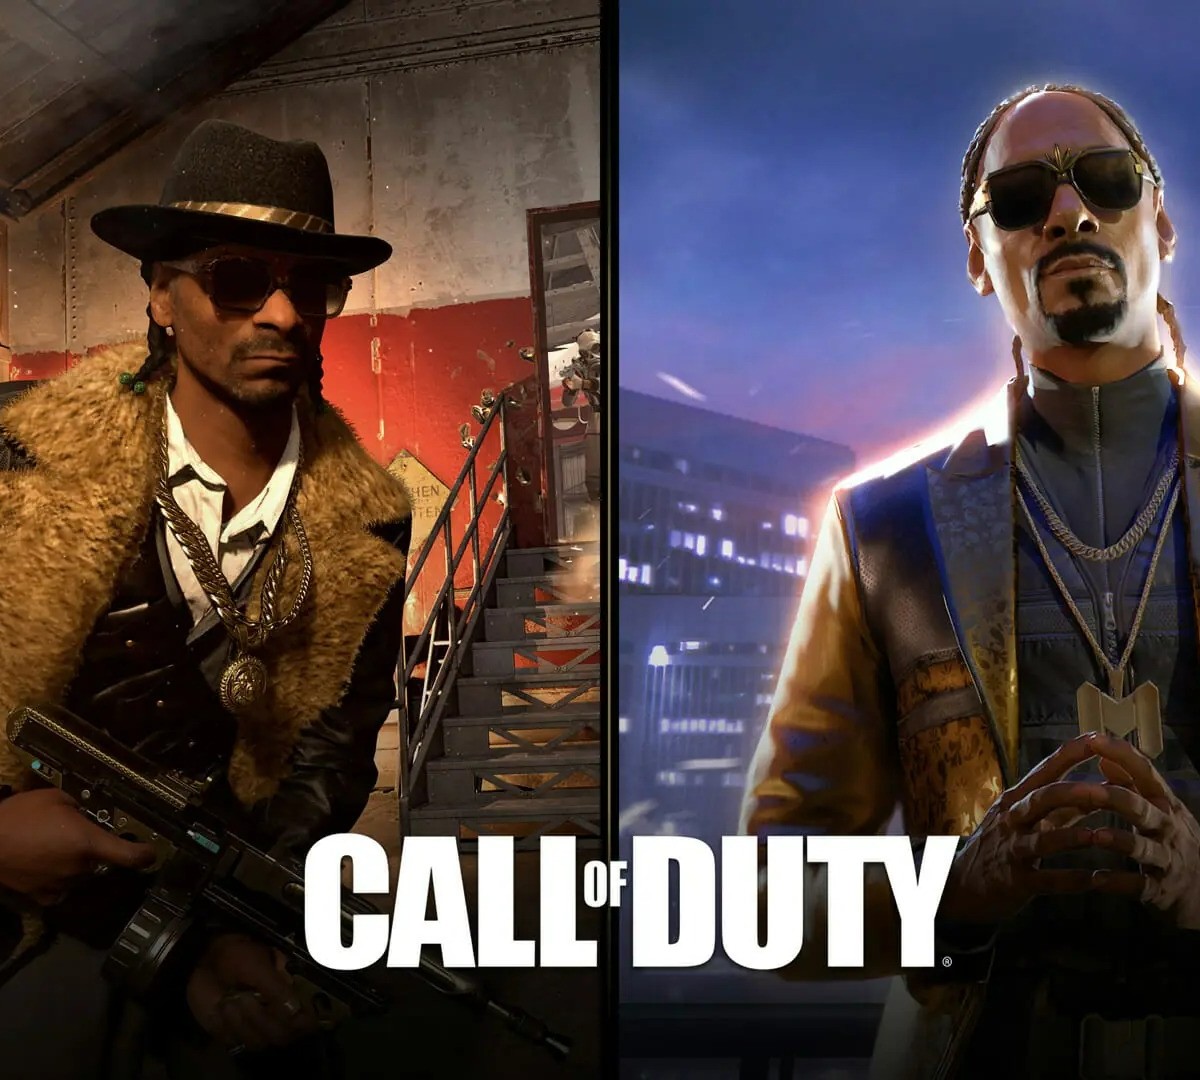 Call of Duty Vanguard: novos operadores aparecem nas redes